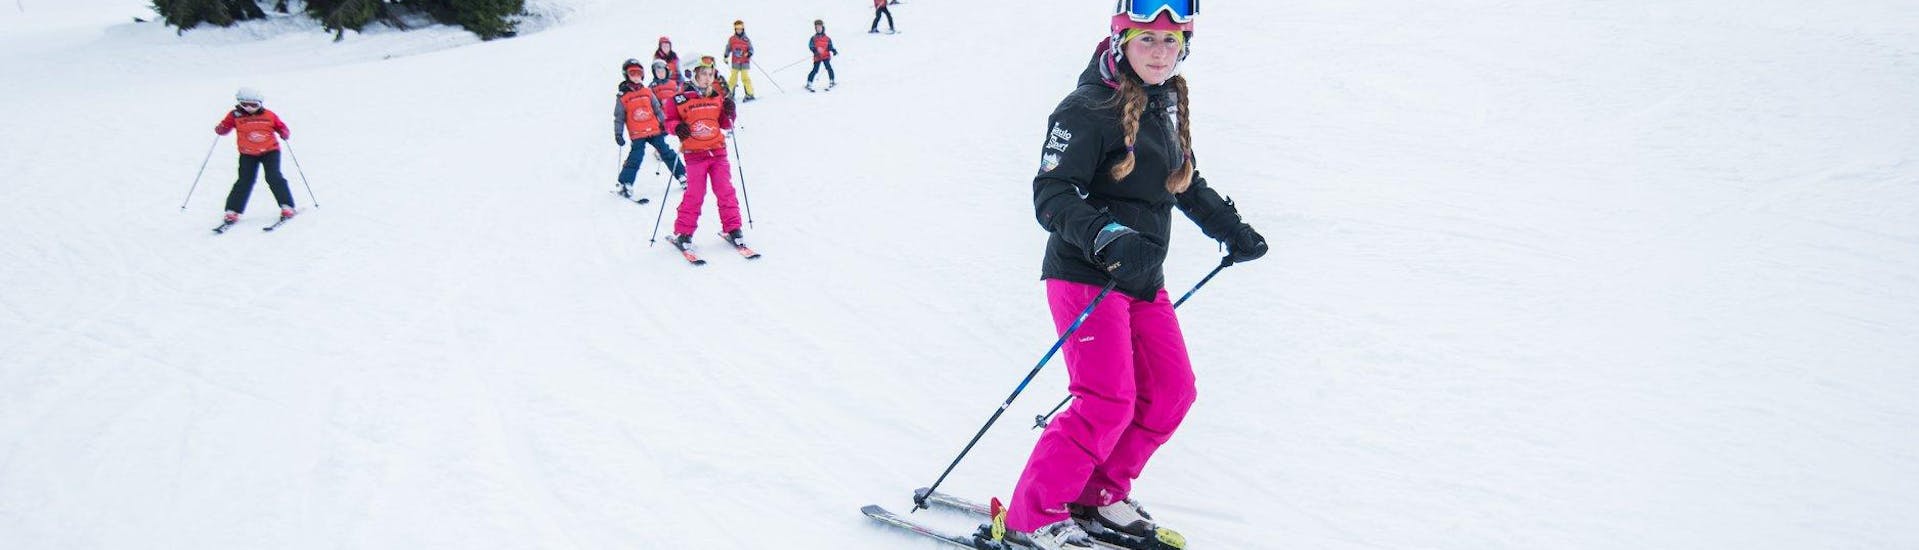 Skikurs für Kinder (4,5-15 Jahre) - Fortgeschritten mit Skischule Snow4fun Szklarska Poreba - Hero image